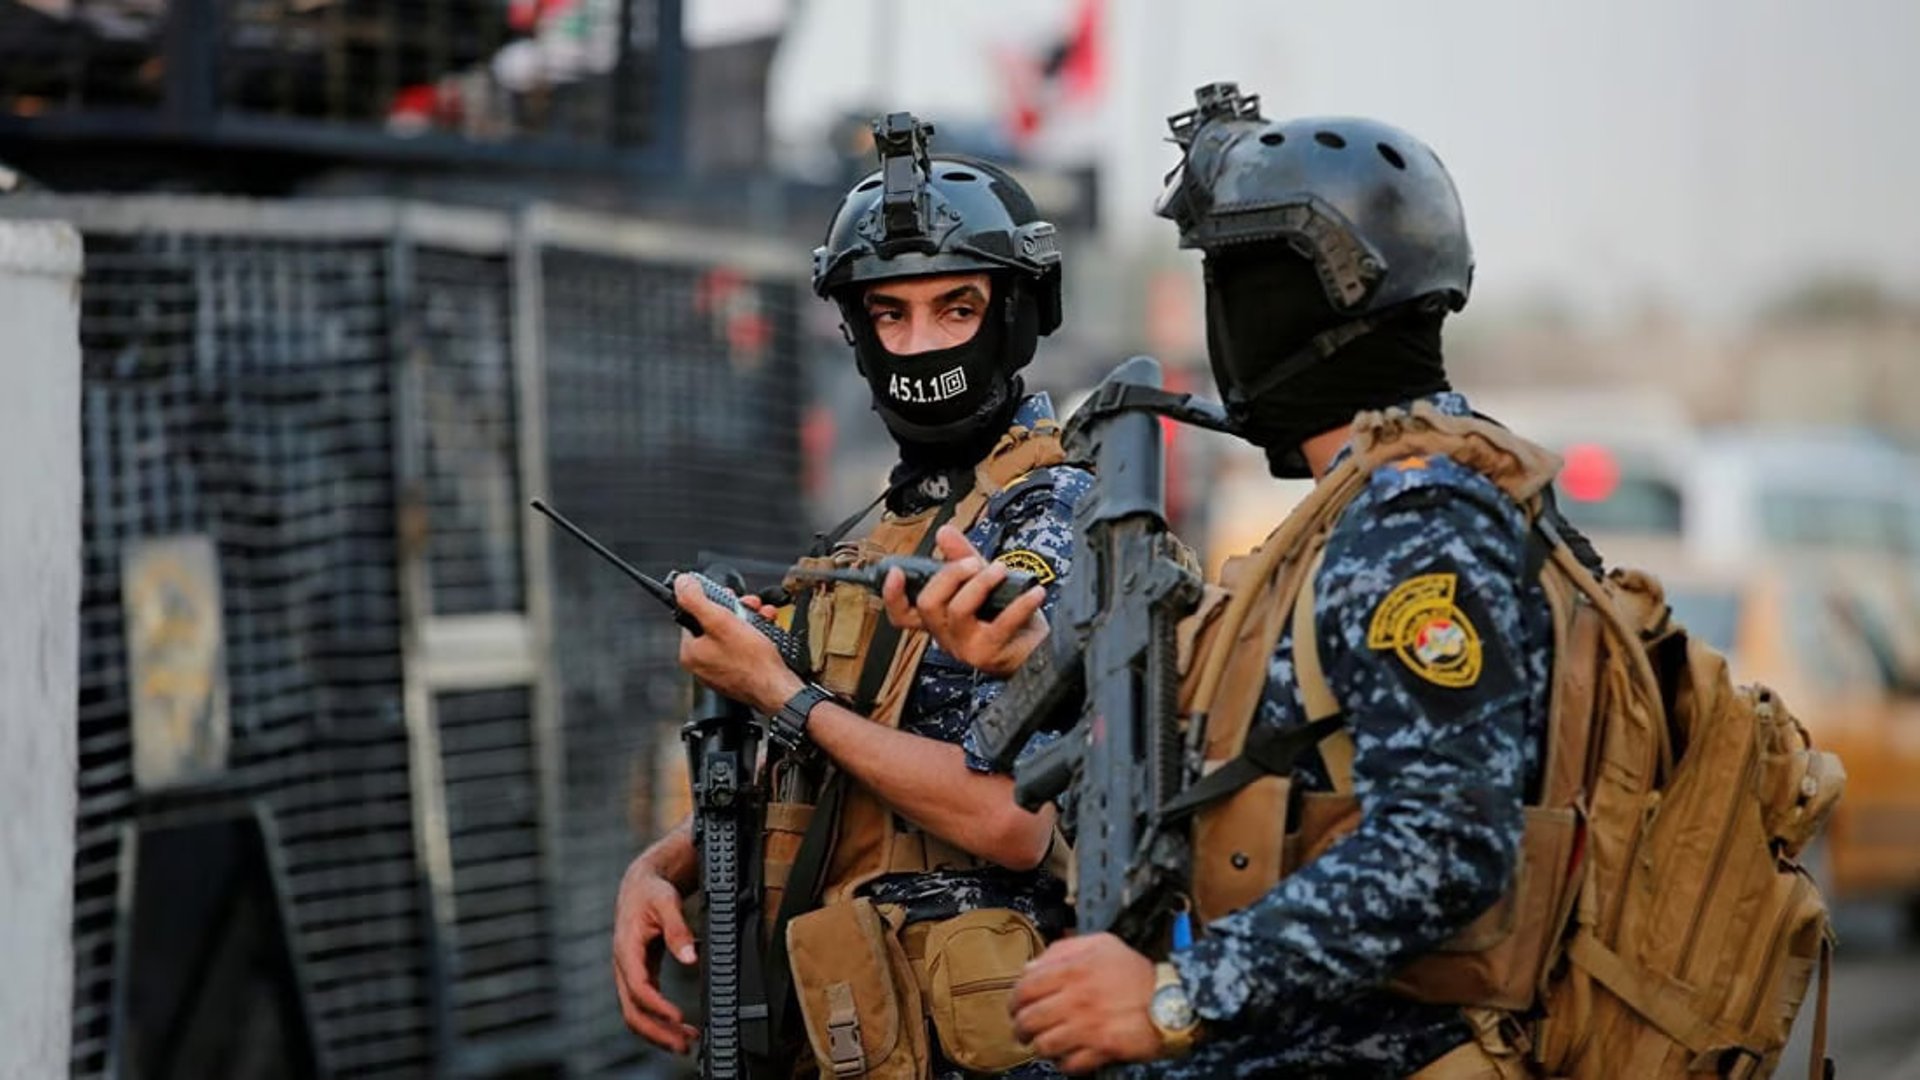 Baghdad crime division arrests suspect in  million dinar theft